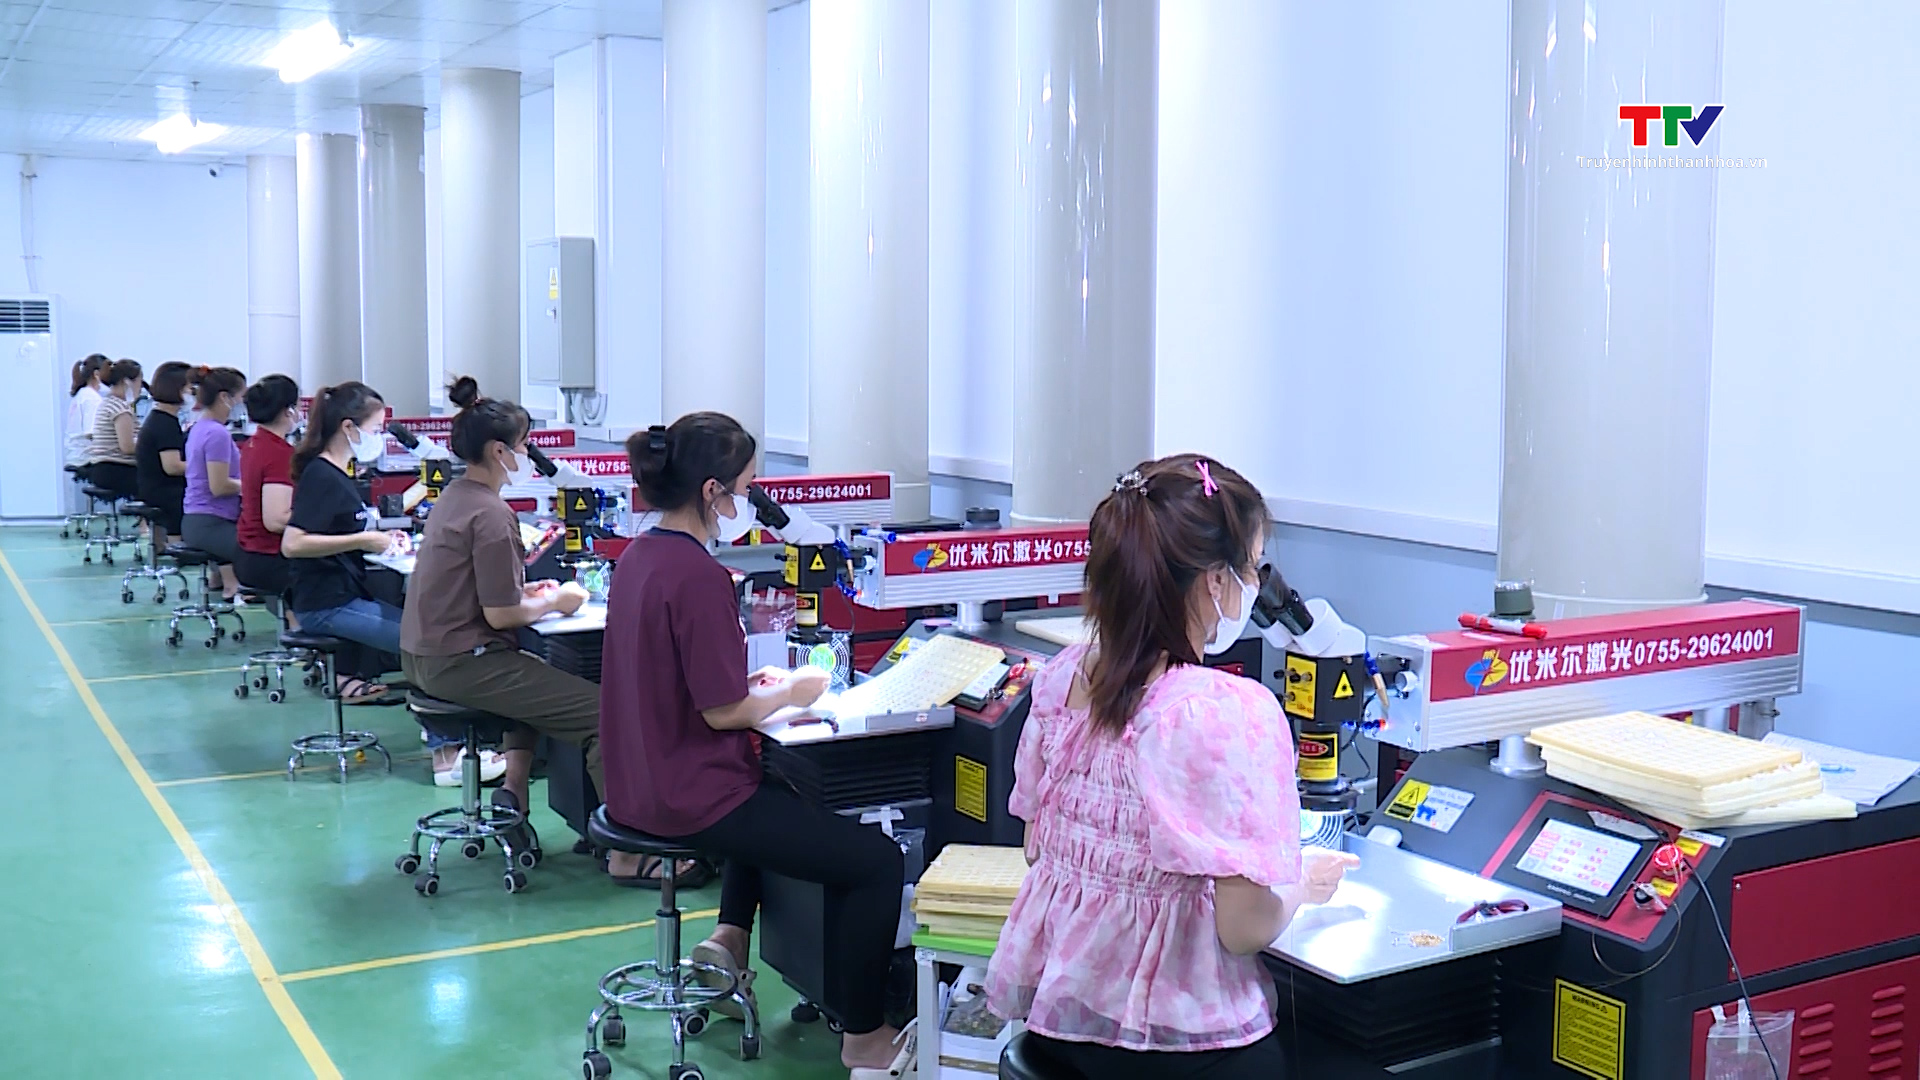 Huyện Thọ Xuân khuyến khích, hỗ trợ phát triển doanh nghiệp- Ảnh 1.